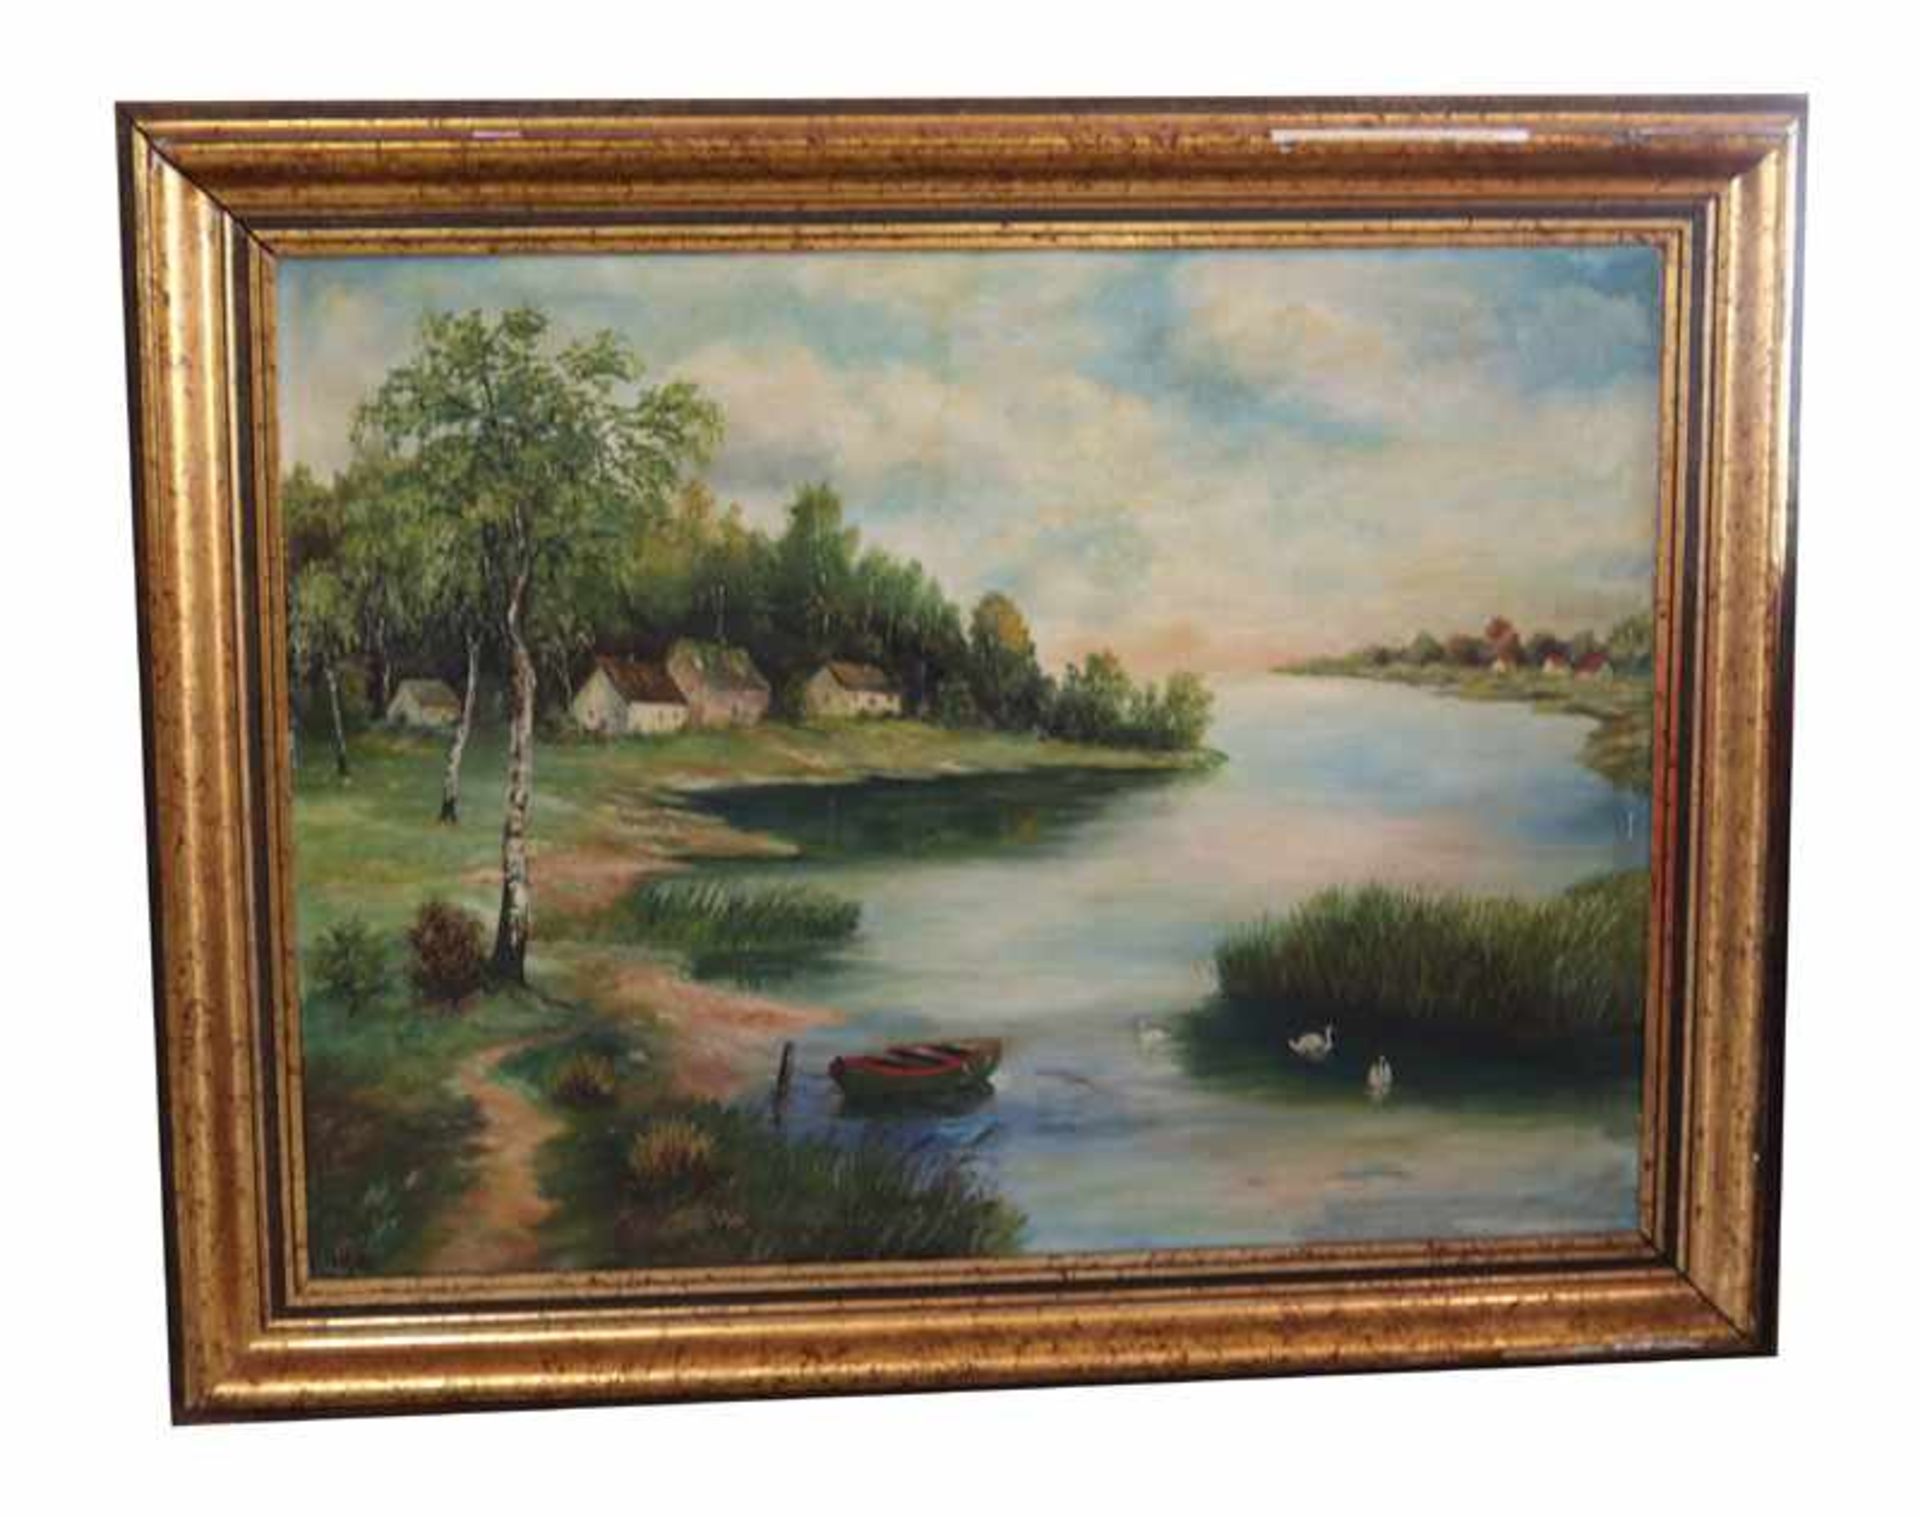 Gemälde ÖL/LW 'See-Landschaft', signiert A. Kötten, 1936, LW beschädigt, teils restauriert, gerahmt,